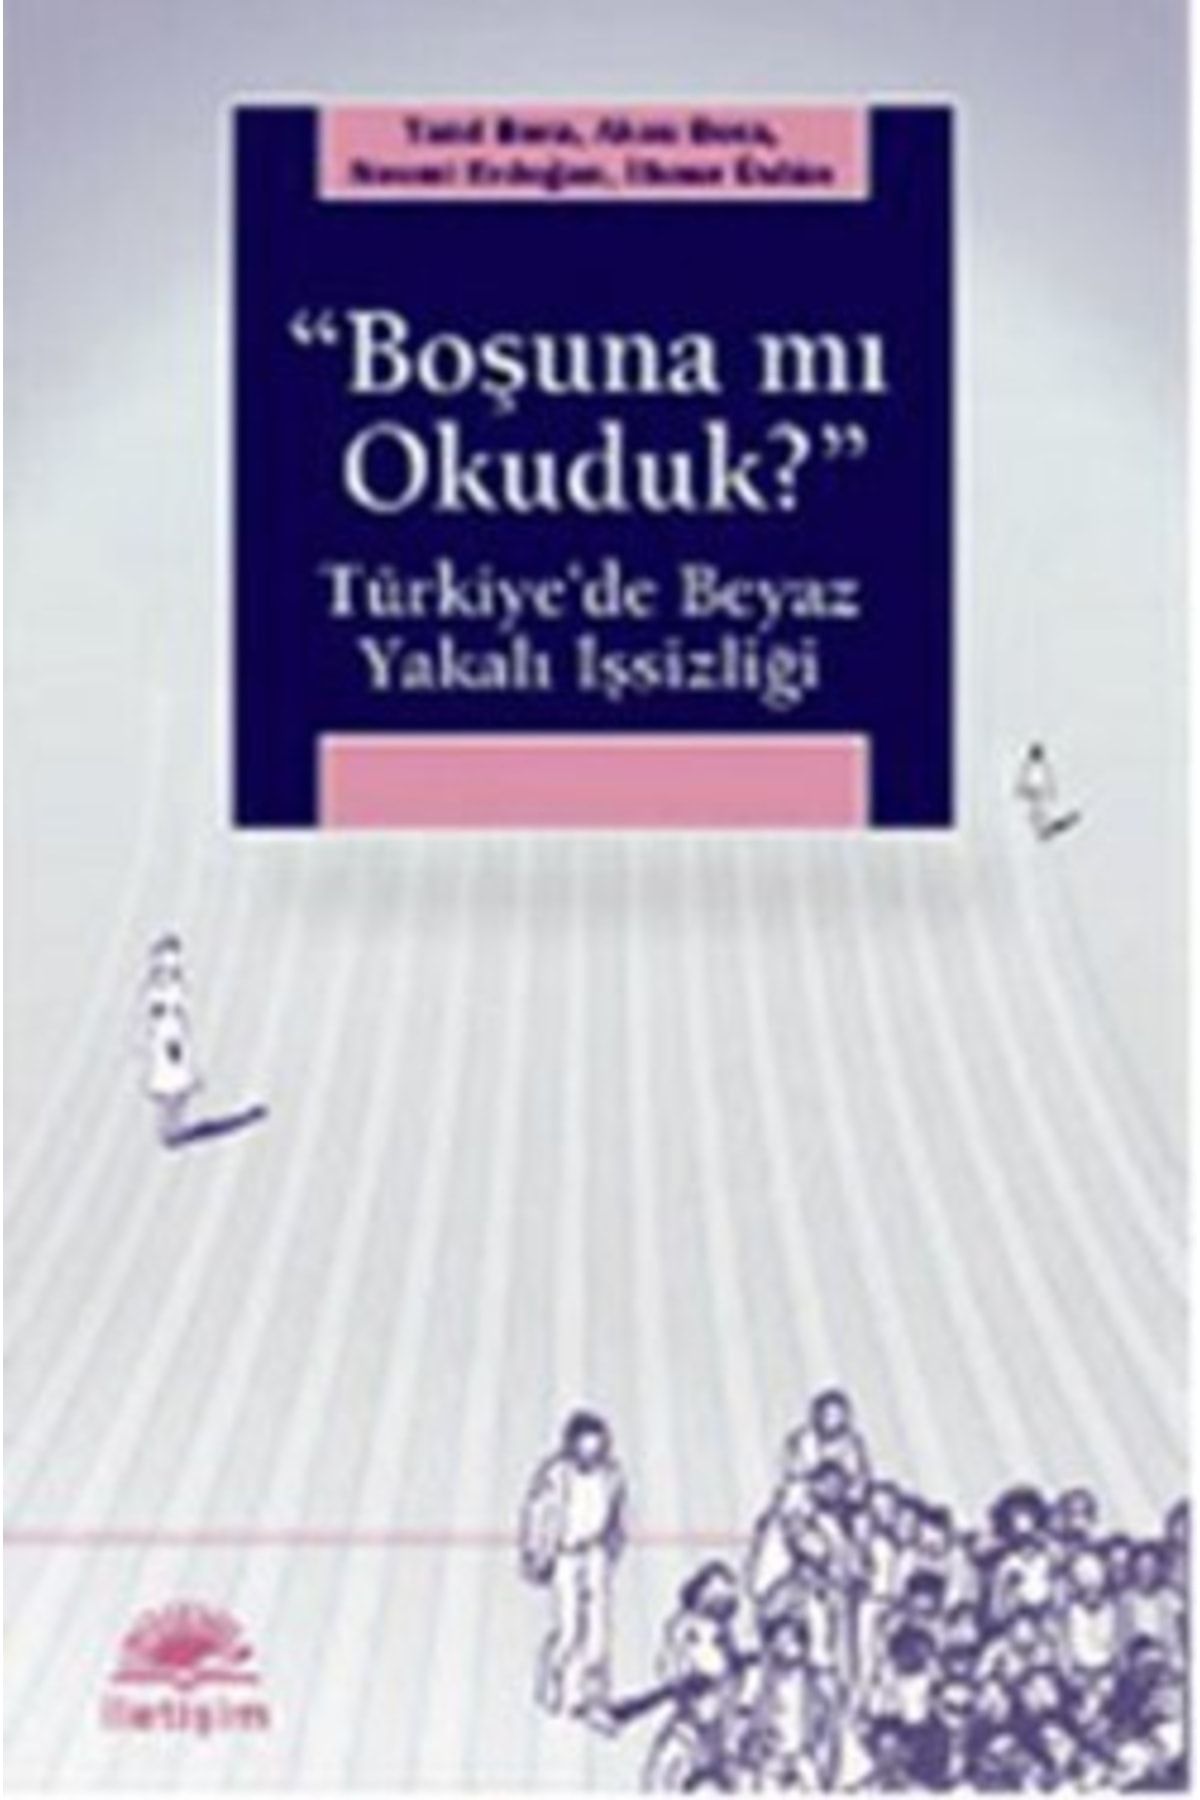 Genel Markalar Boşuna Mı Okuduk ?: Türkiye'de Beyaz Yakalı Işsizliği